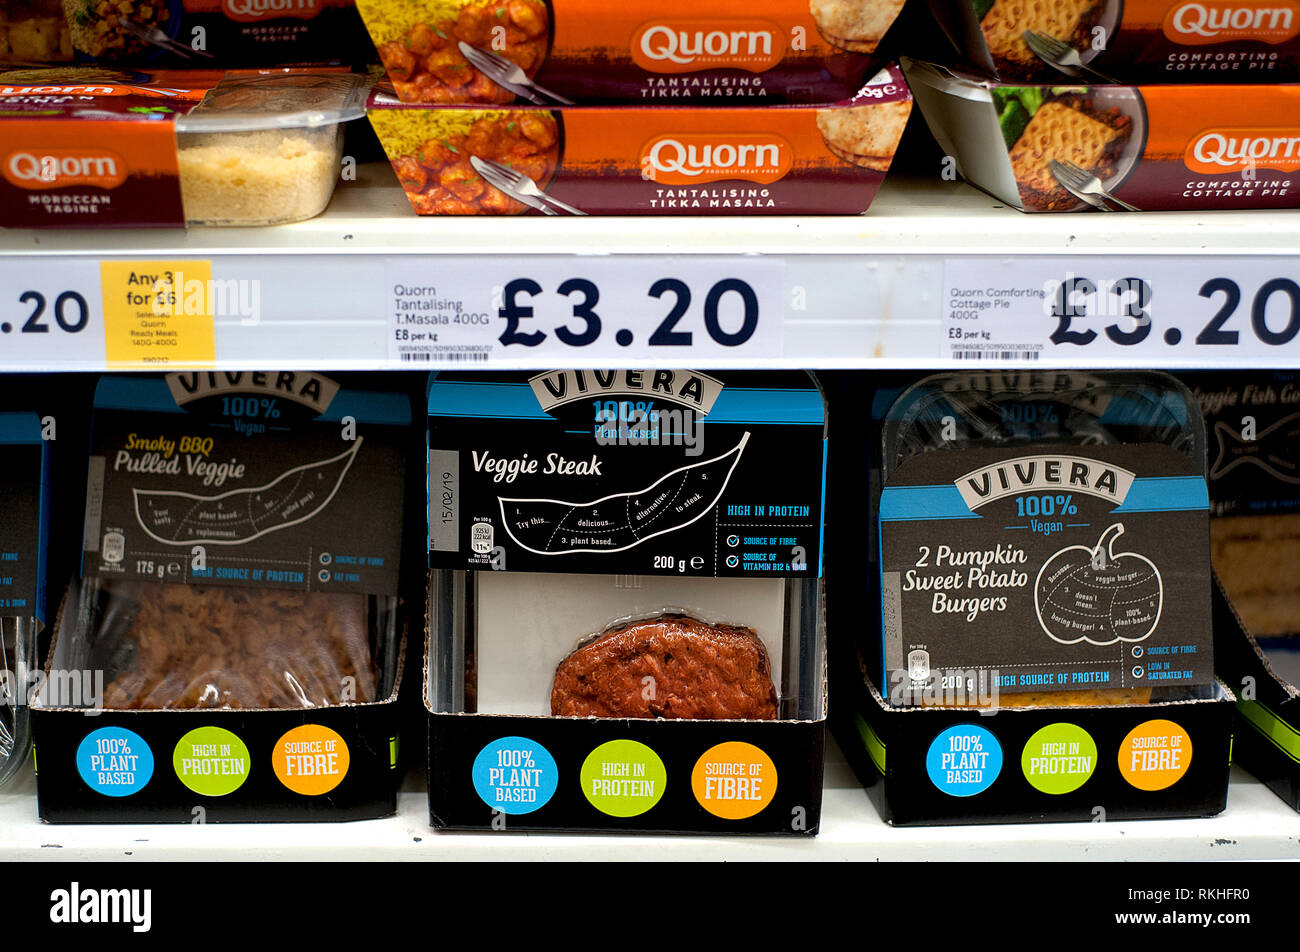 Vegetariano e vegano gamme di prodotti alimentari può essere trovato in tutte le catene di supermercati britannici come la tendenza per a base di vegetali e carne-gratuitamente il cibo diventa sempre più popolare Foto Stock